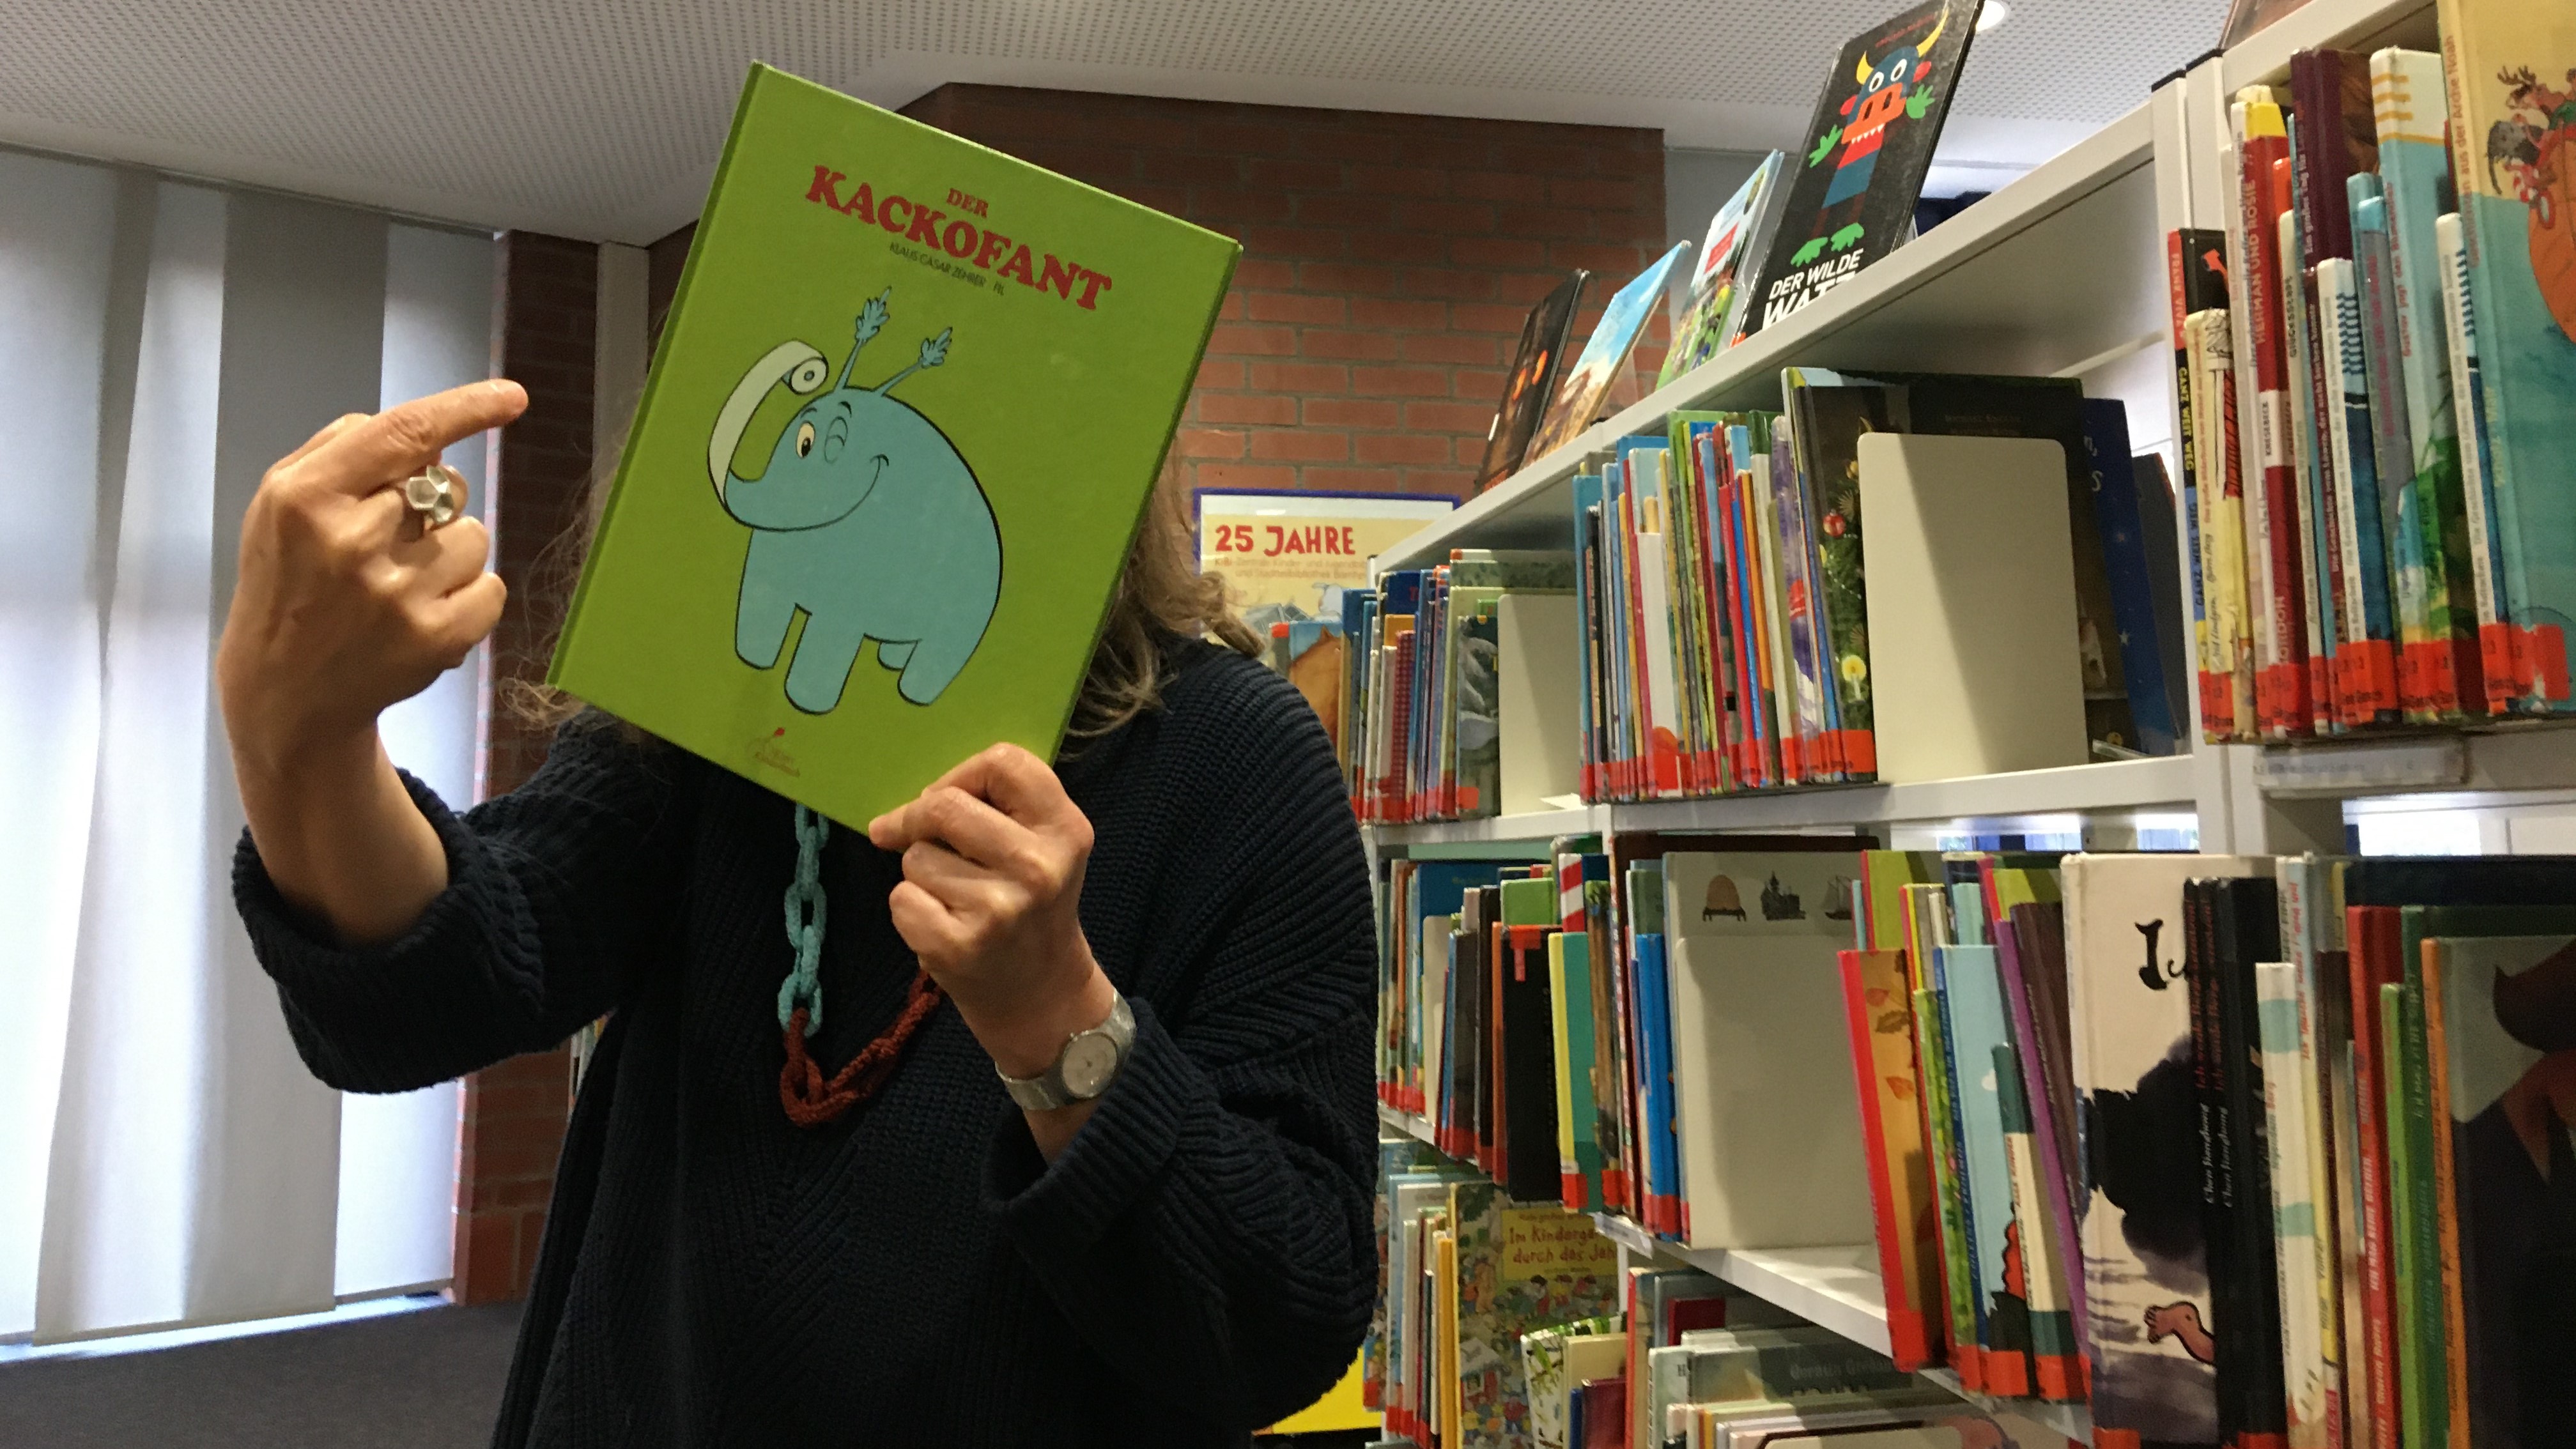 Grünes Buchcover mit blauem Elefanten, hochgehalten von Stadtbüchereimitarbeiterin vor Bücherregal